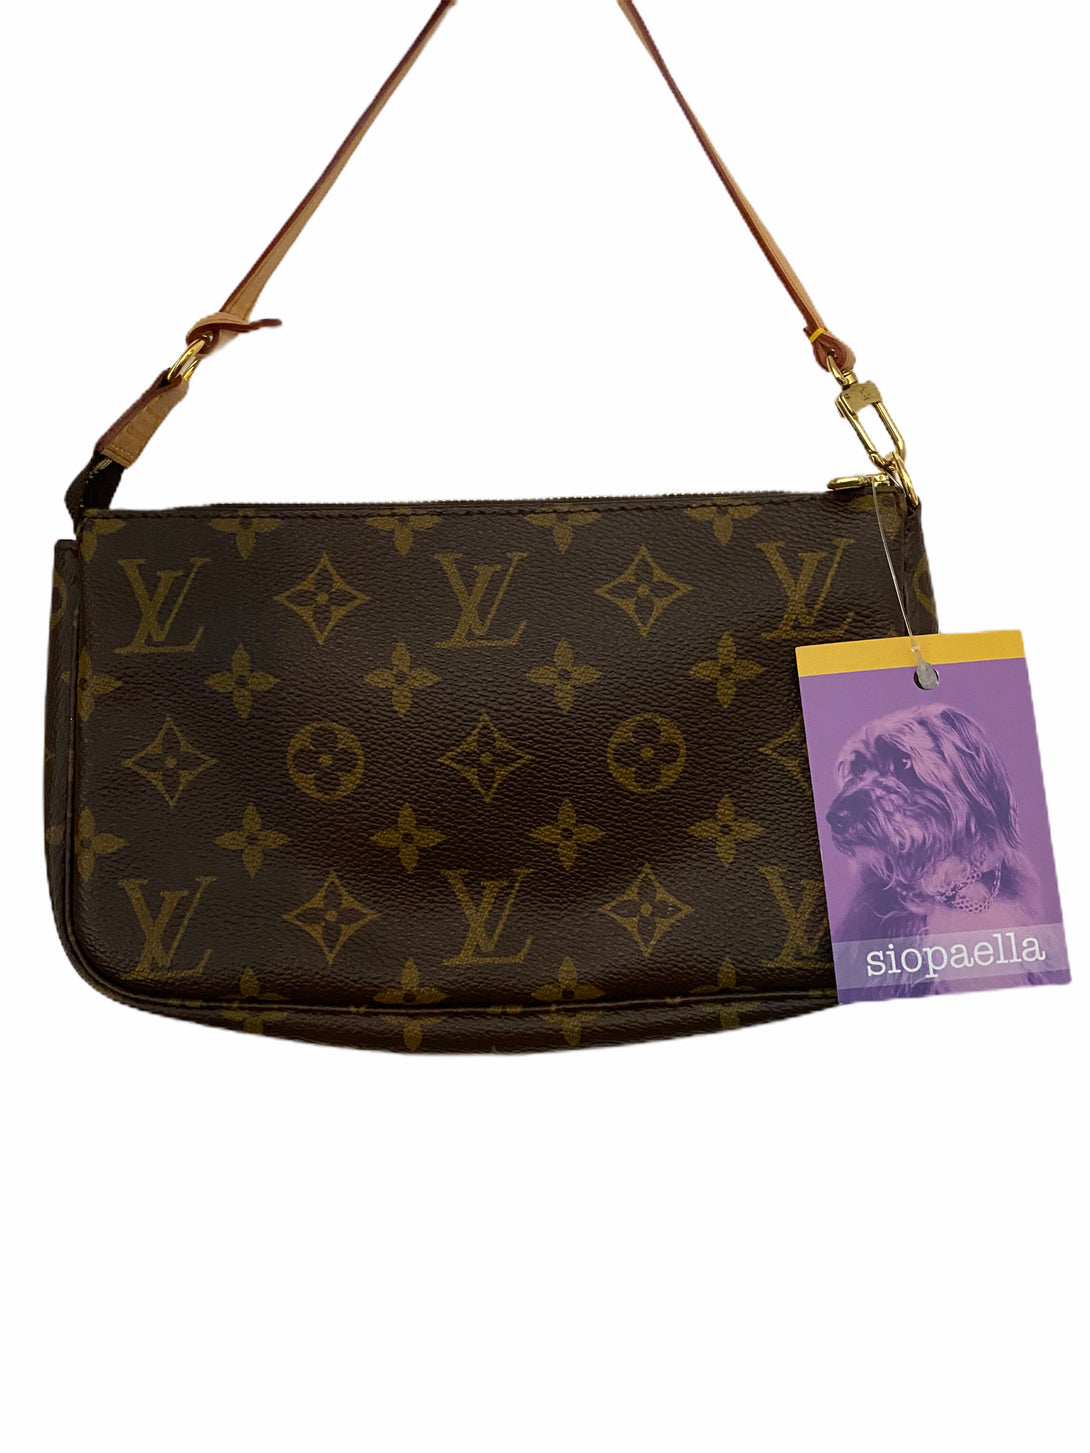 Louis Vuitton Monogram Pochette - As seen on Instagram 29/07/20 - Siopaella Designer Exchange